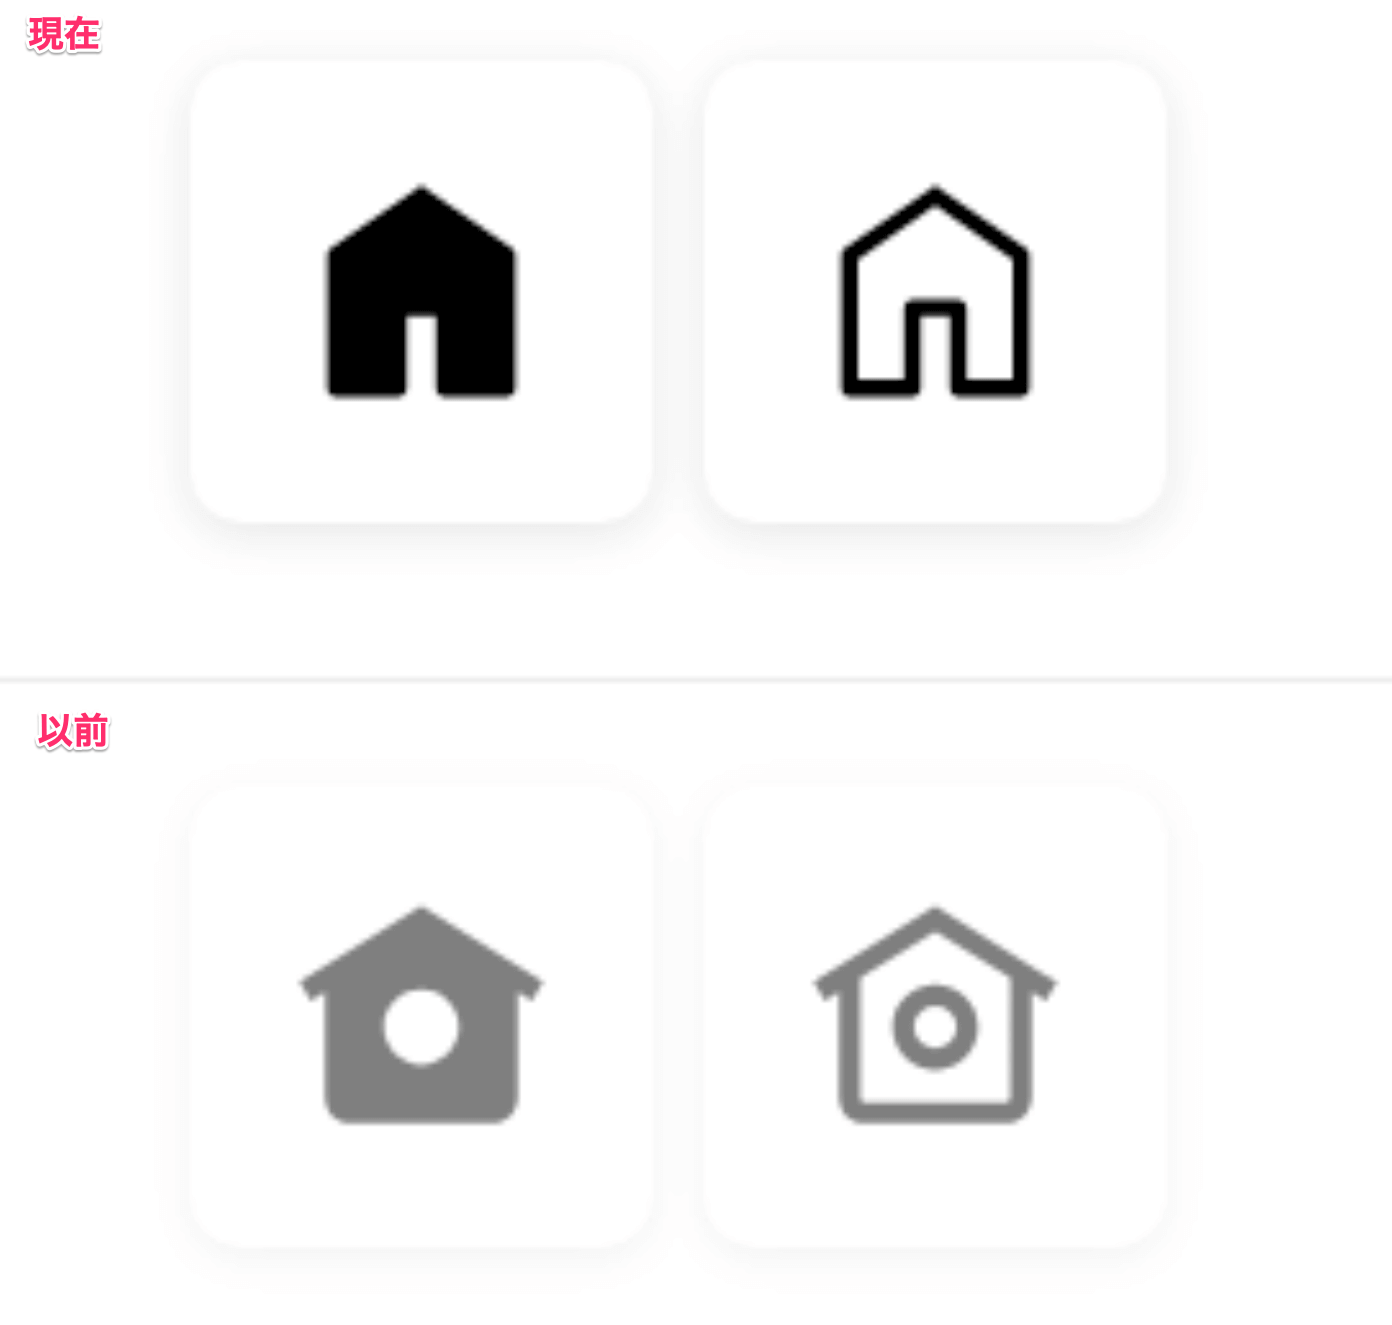 X、｢ホーム｣アイコンのデザインを”鳥カゴ”から”家”に変更